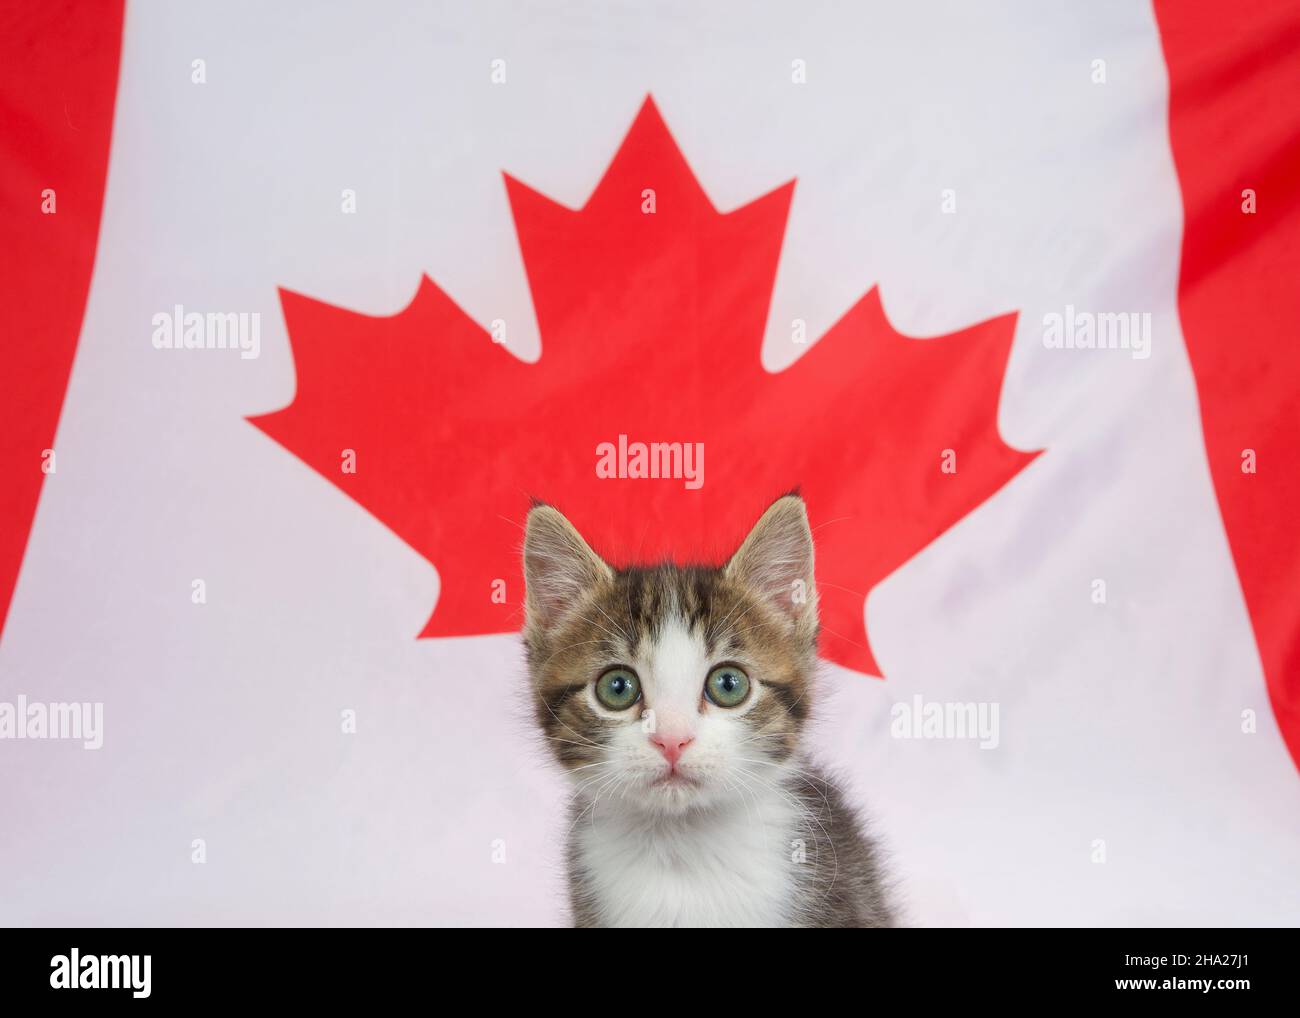 Gros plan d'un adorable chaton gris et blanc devant la feuille d'érable rouge sur le drapeau canadien, regardant directement le spectateur. Banque D'Images